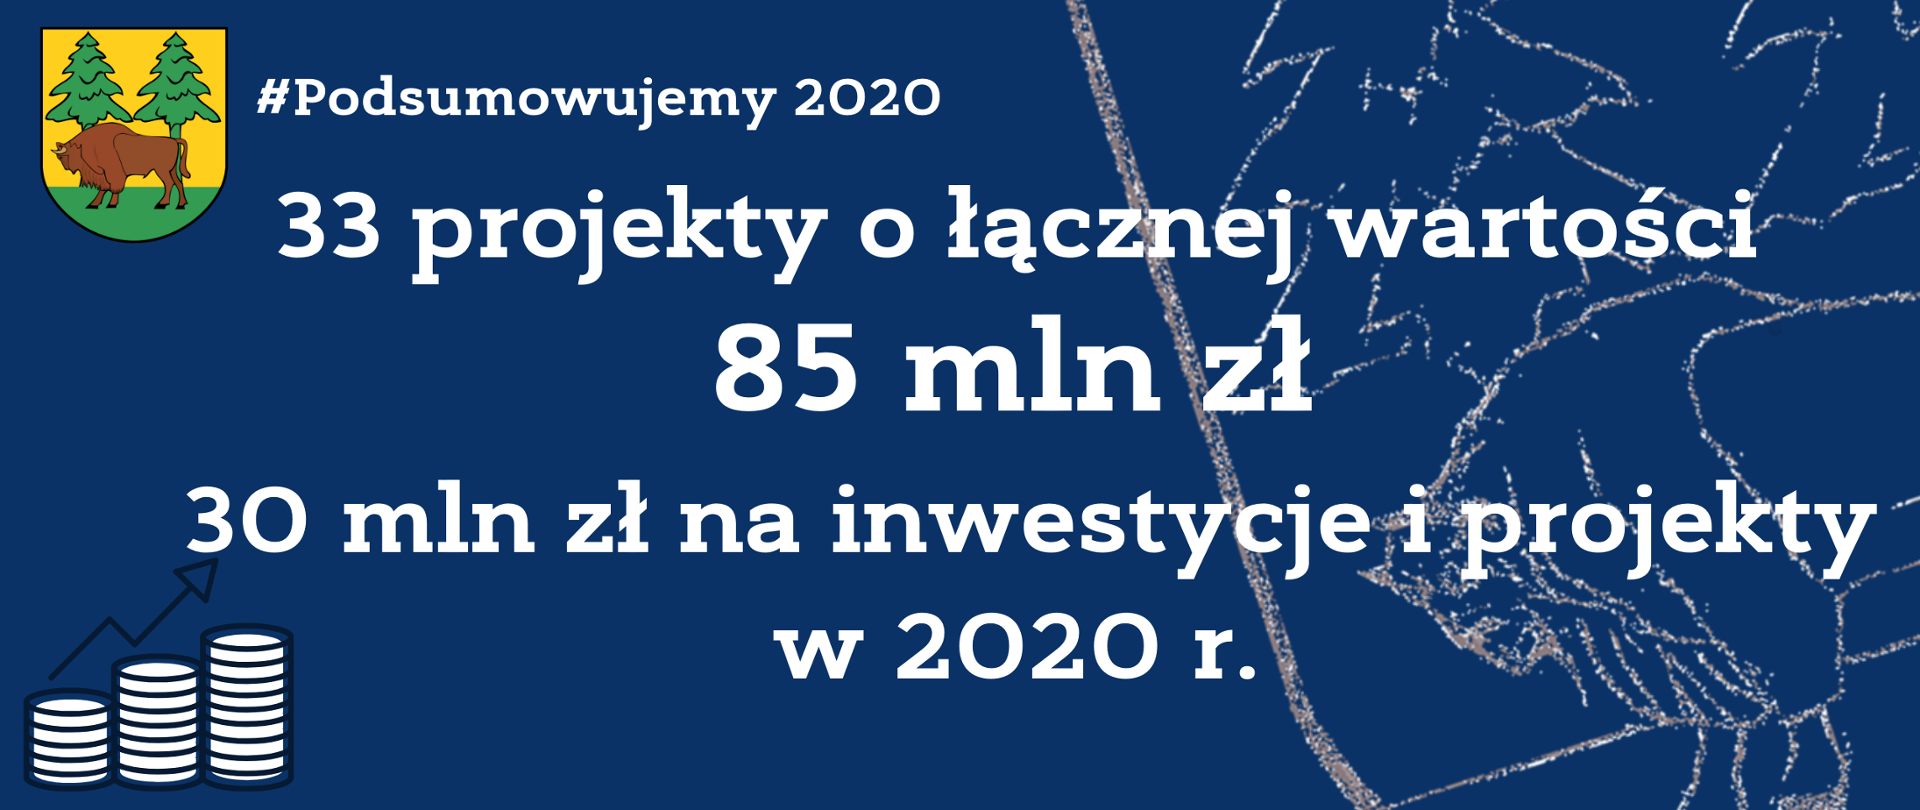 Podsumowujemy rok 2020: 33 projekty o łącznej wartości 85 mln zł, 30 mln zł na inwestycje i projekty w 2020 r.